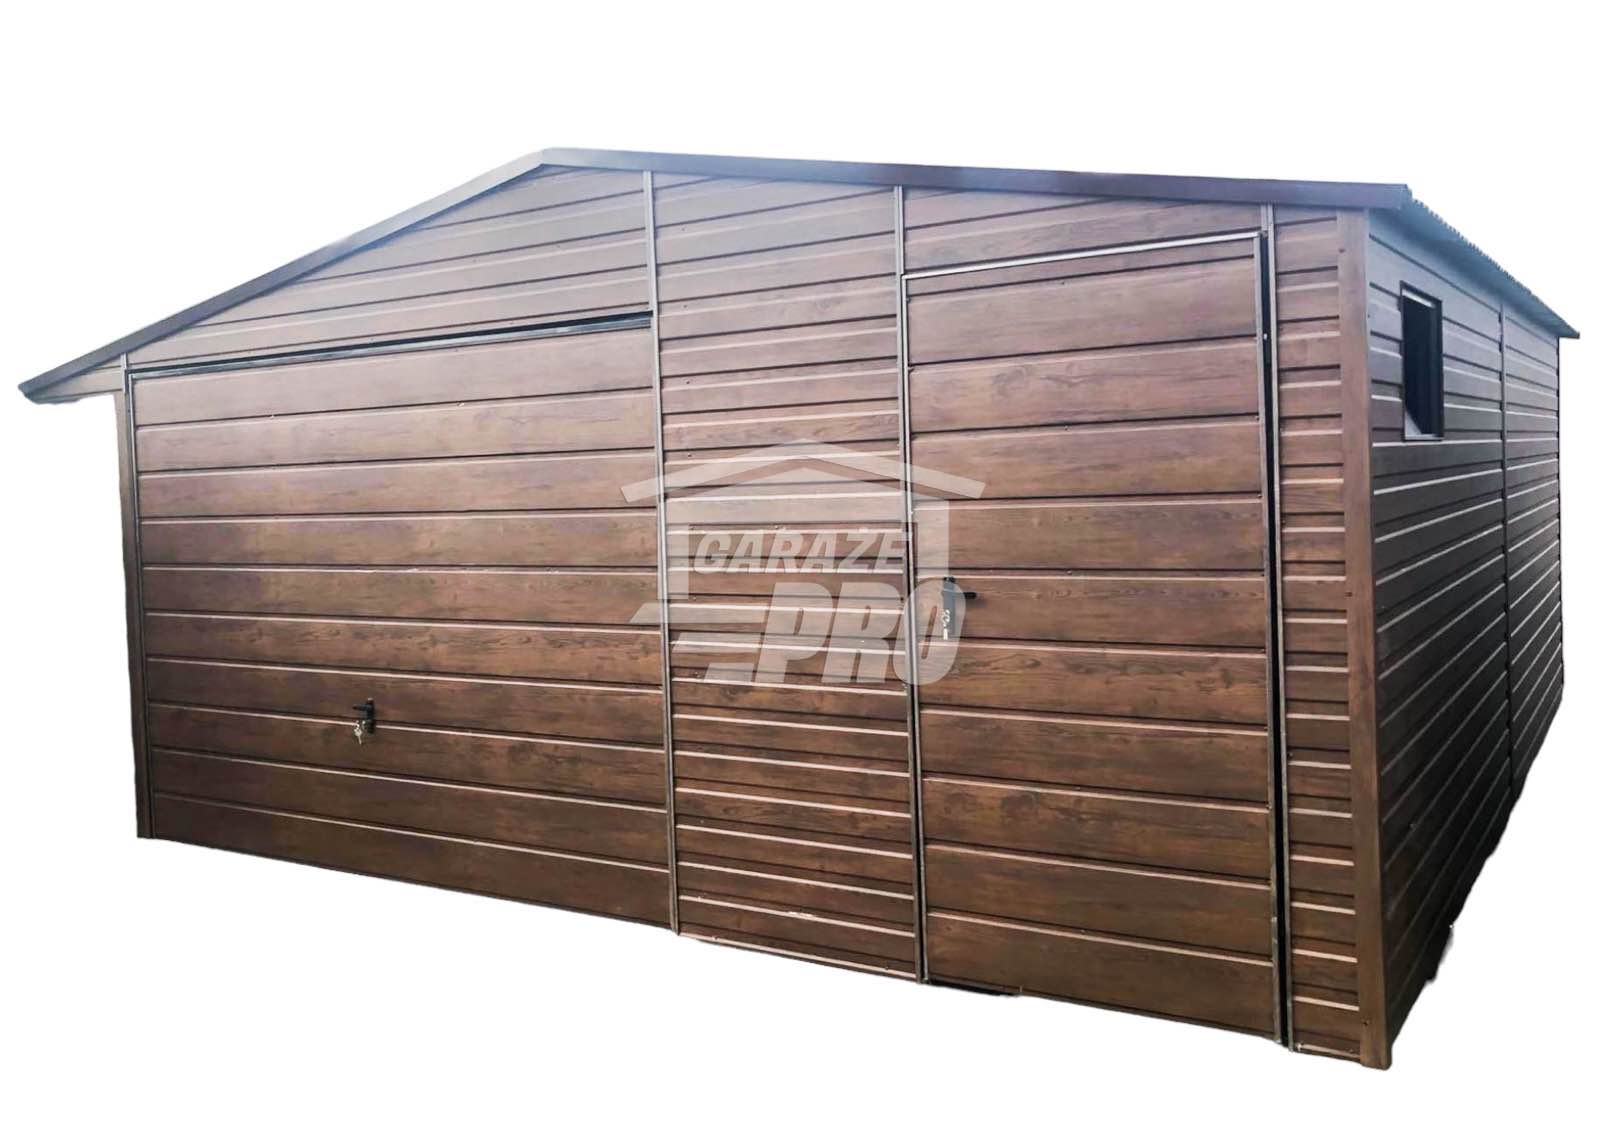 Garaż blaszany 5x5 Brama drewnopodobny  Dach dwuspadowy GP86 Krowodrza - zdjęcie 1